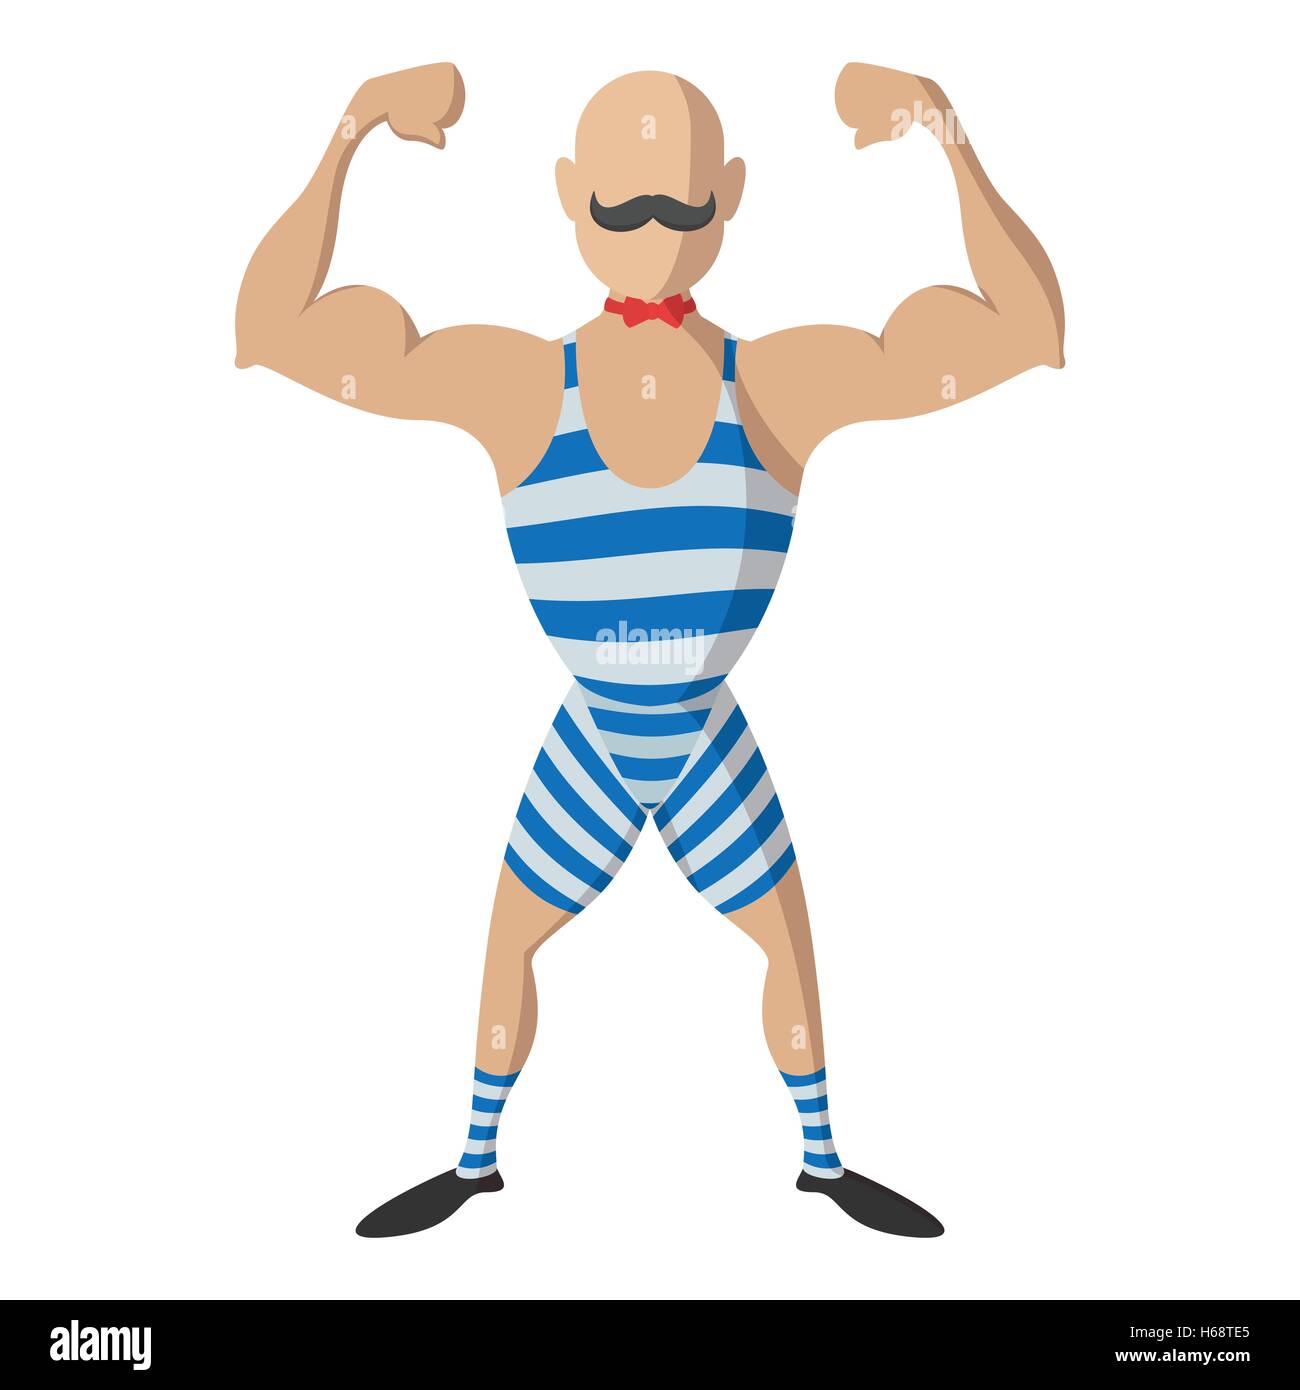 Strong man cartoon Stock Vector Image & Art - Alamy